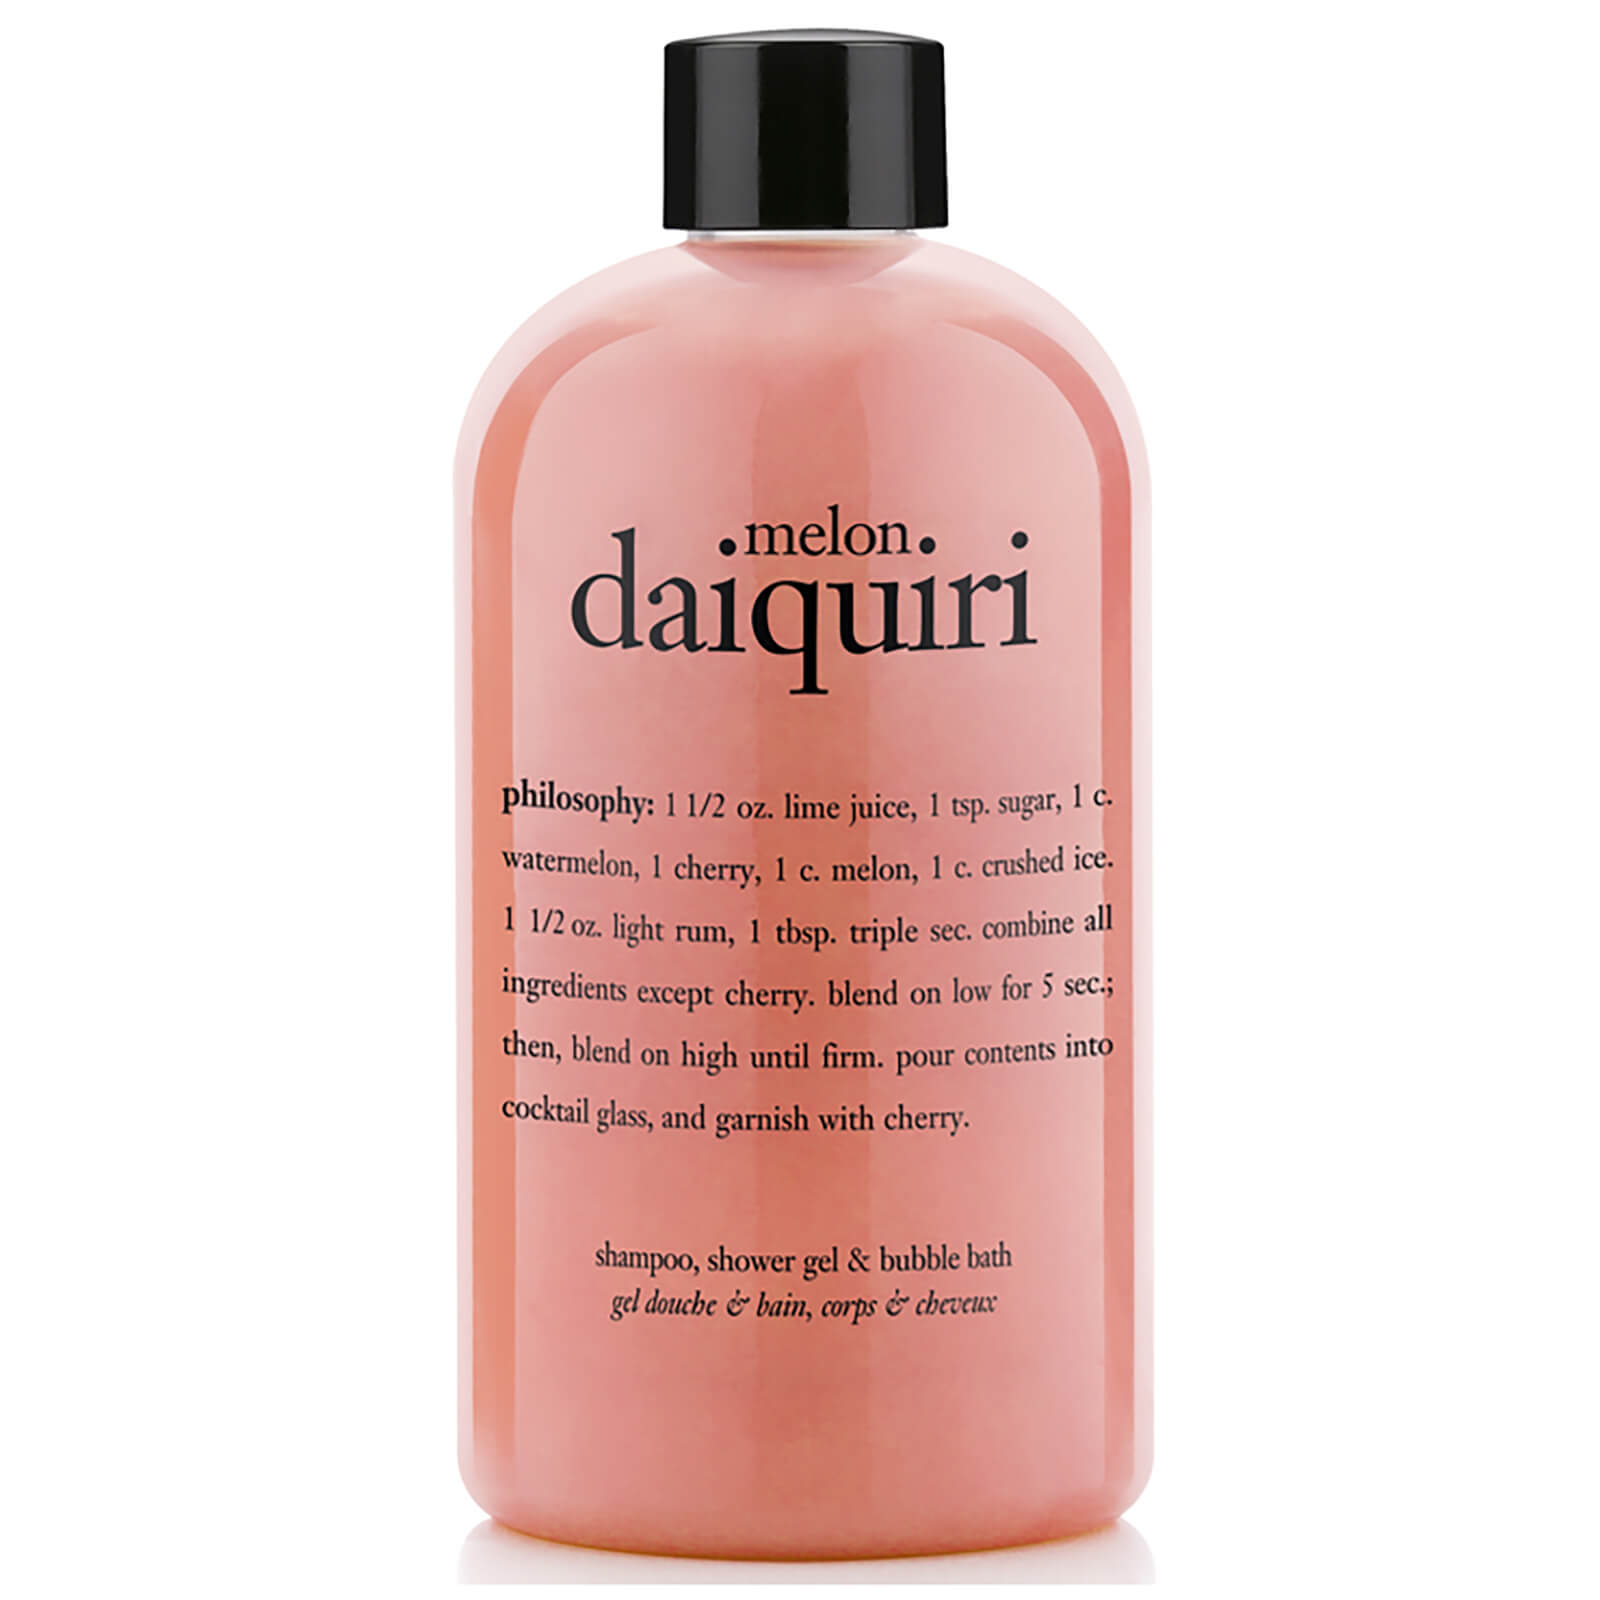 philosophy Melon Daiquiri Shampoo, Bath & Shower Gel 480ml